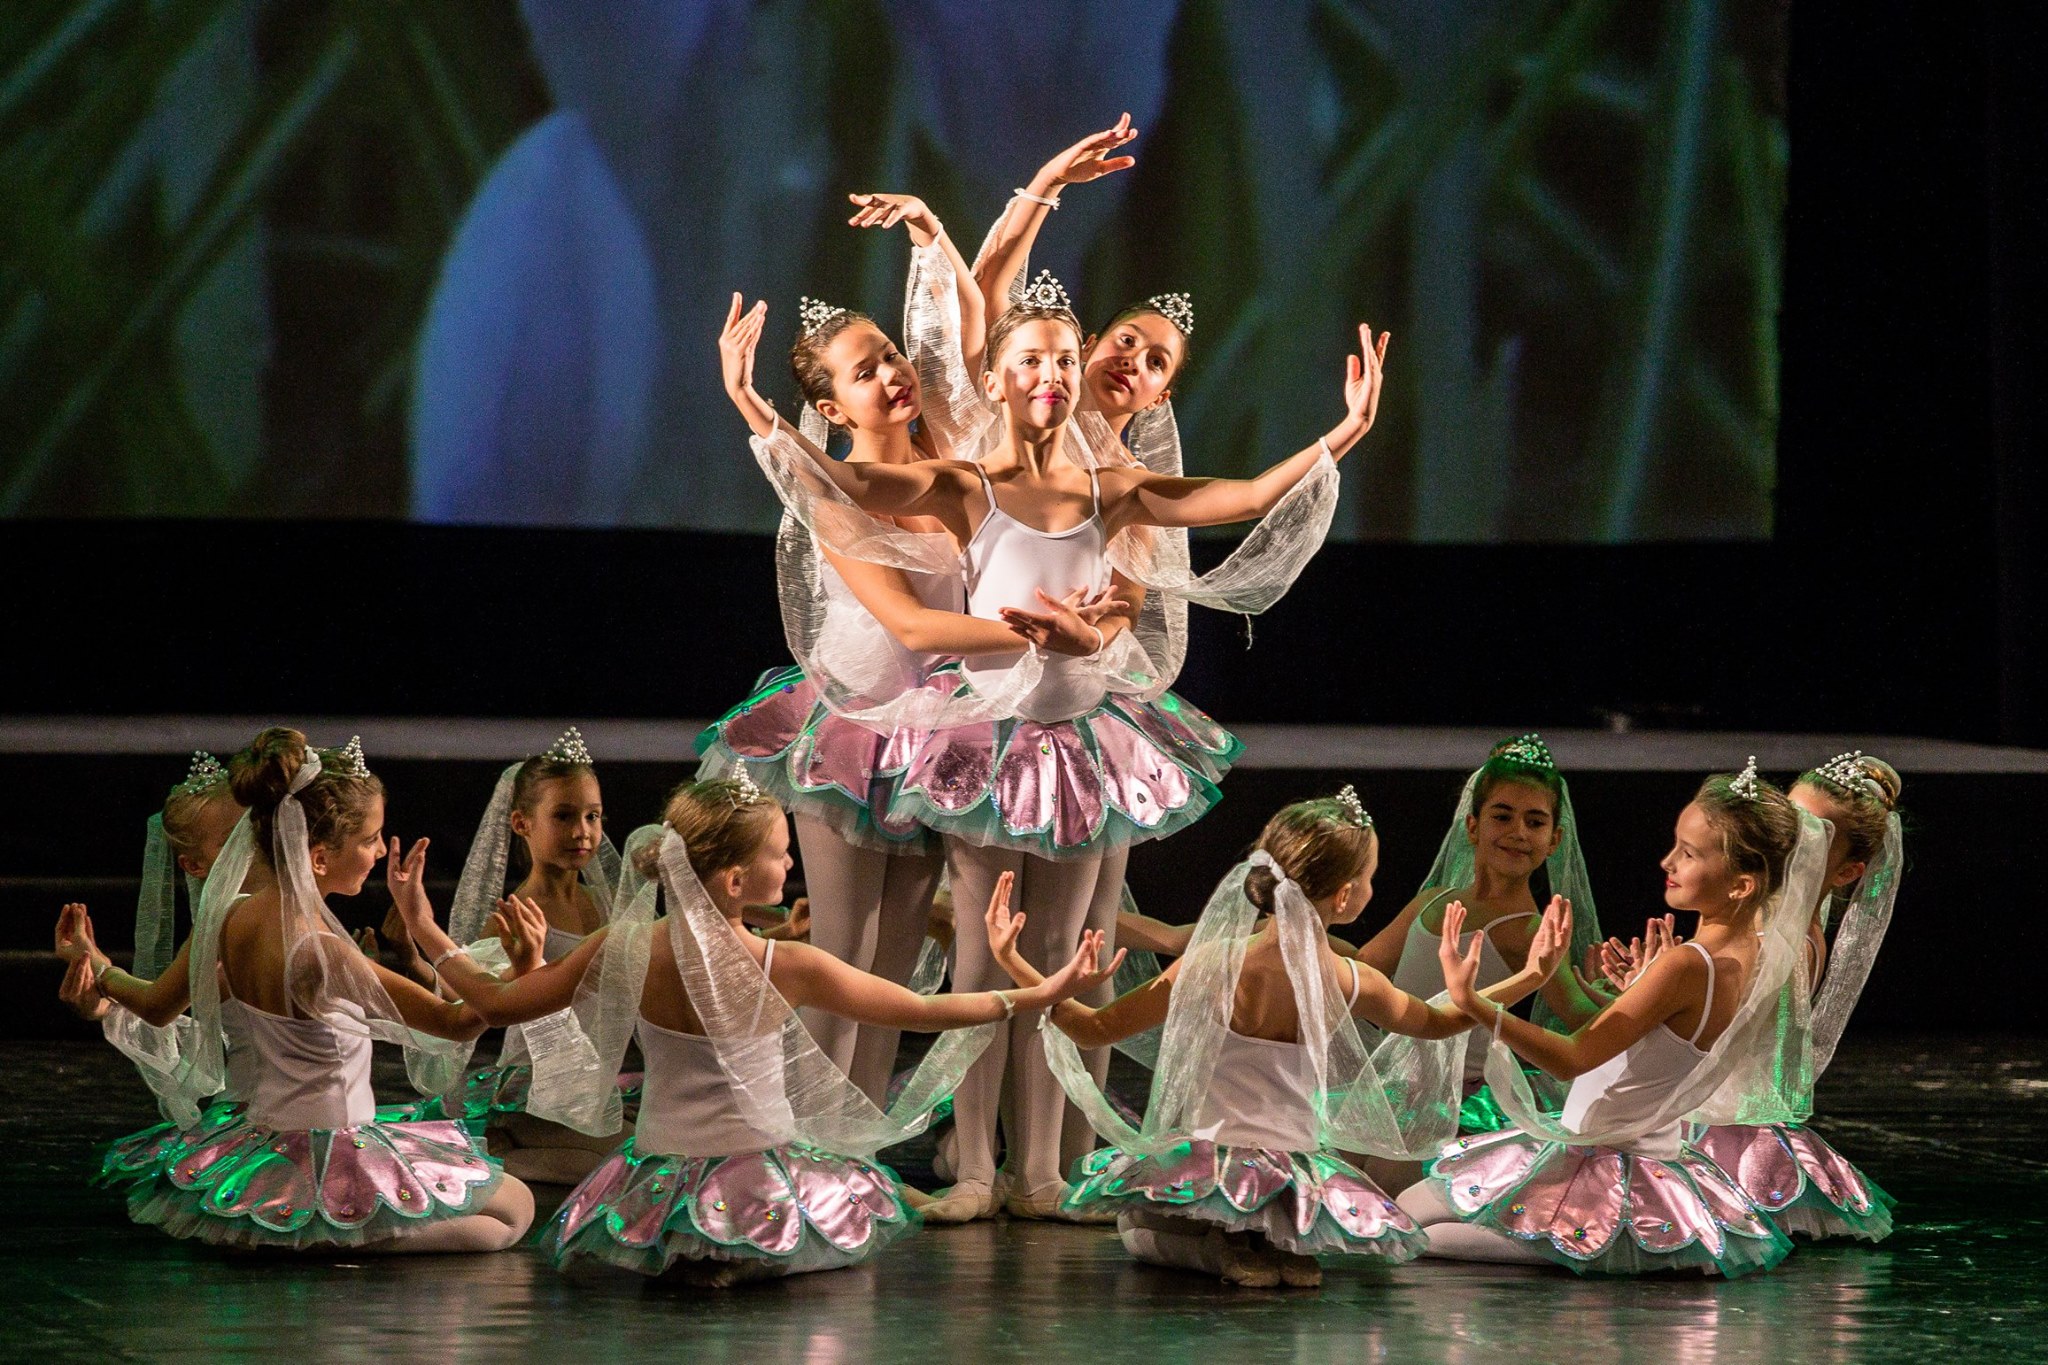 Baletska škola "Princeza Ksenija" gostuje u Kini